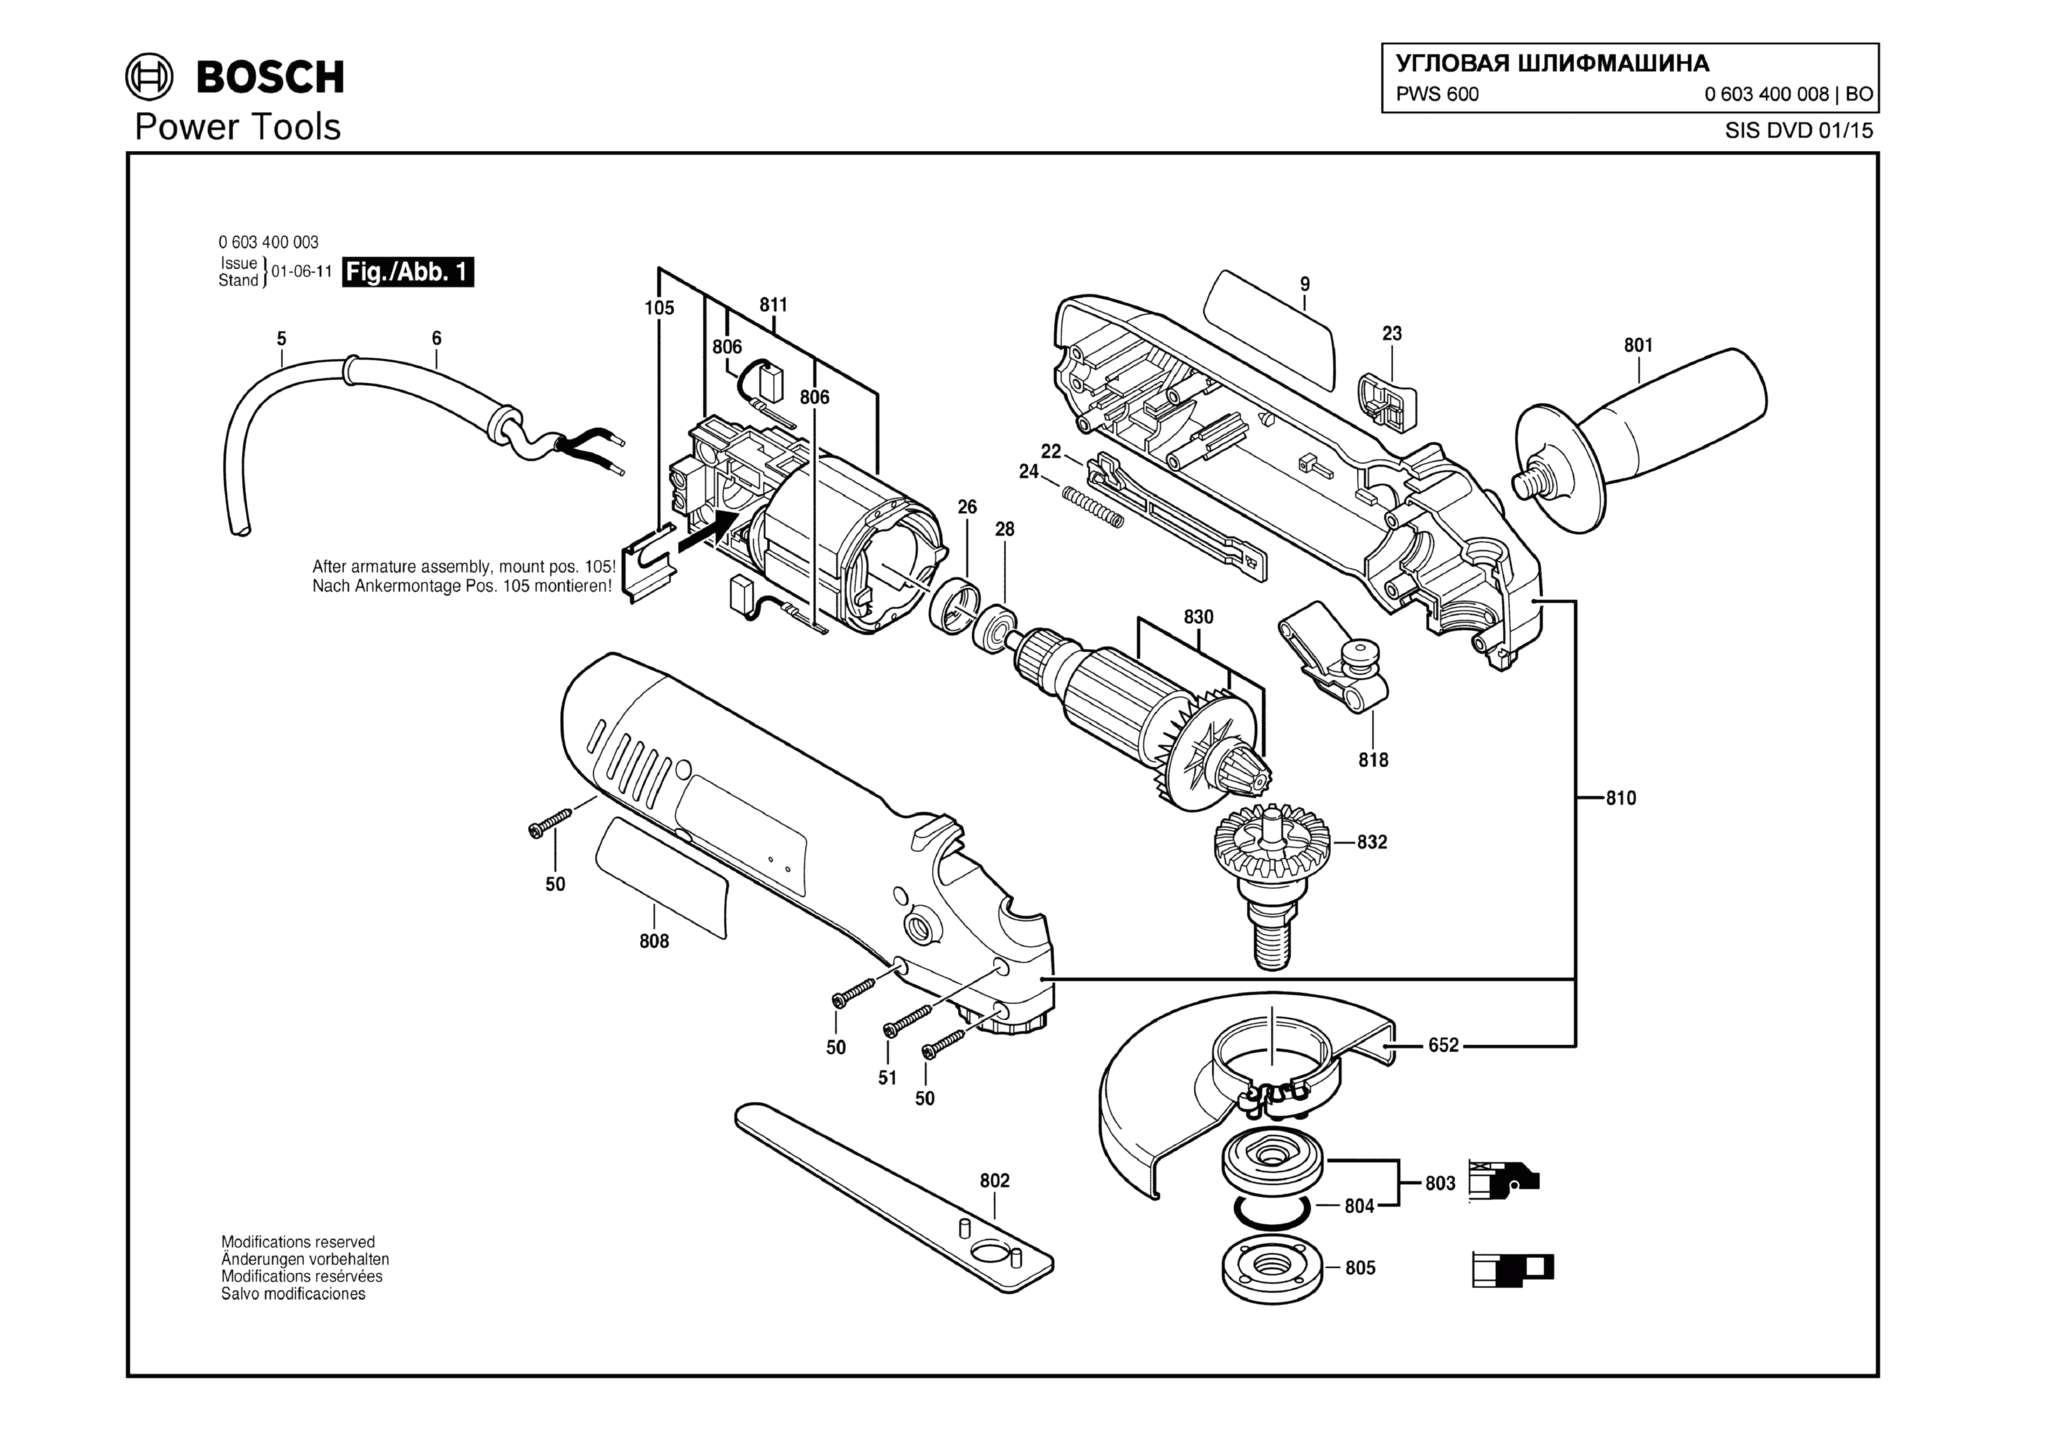 Запчасти, схема и деталировка Bosch PWS 600 (ТИП 0603400008)